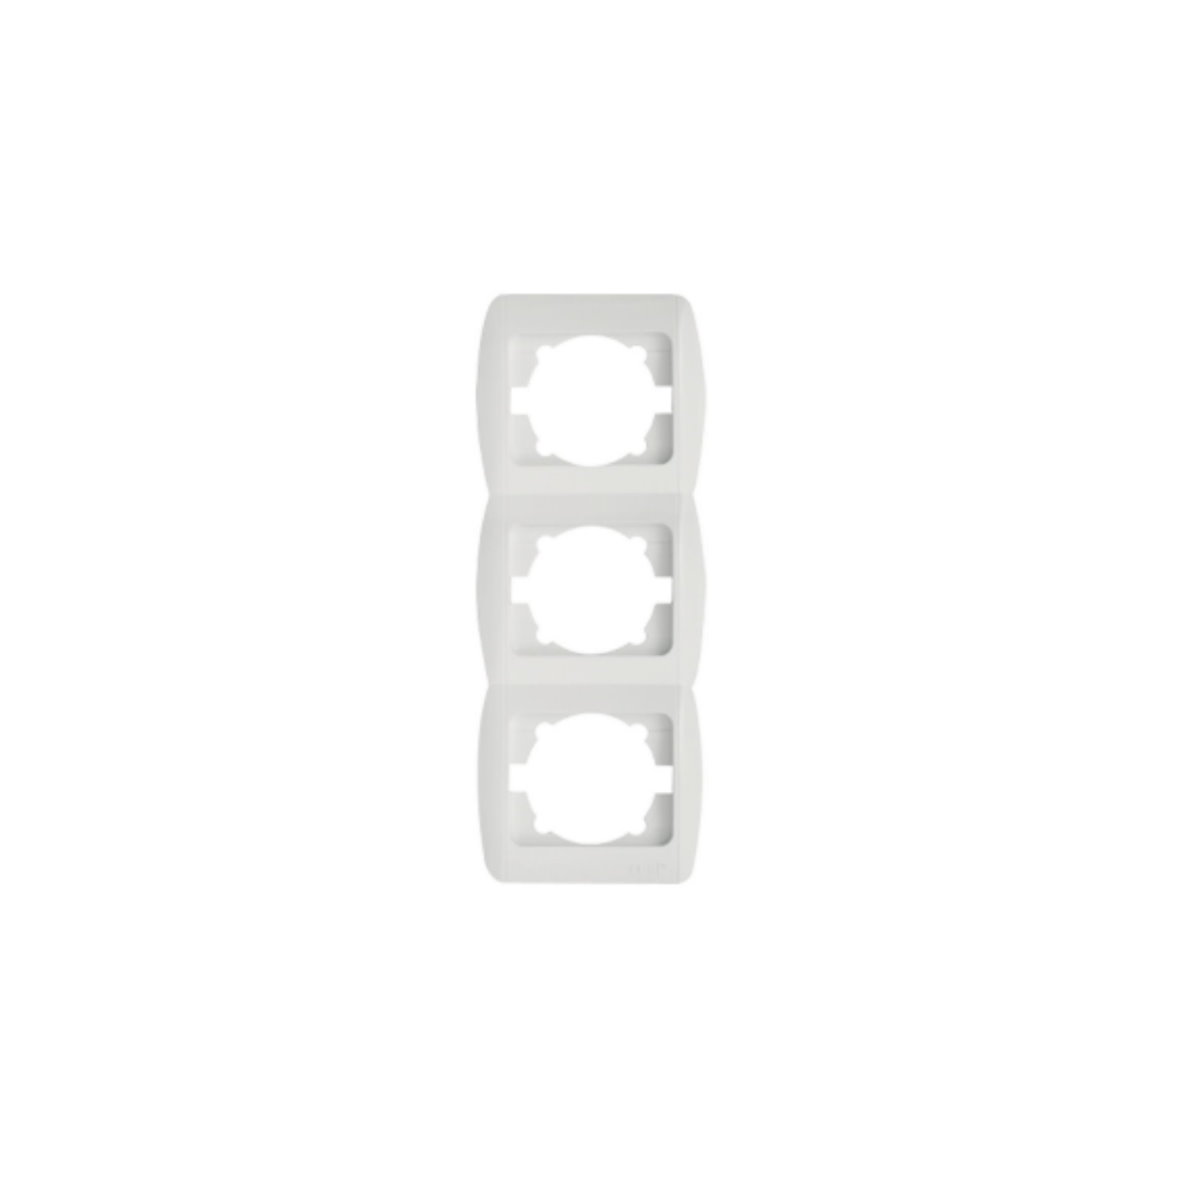 Indexbild 49 - Schalterserie Schalterprogramm alpinweiß - All-in - Rahmen + Einsatz + Abdeckung